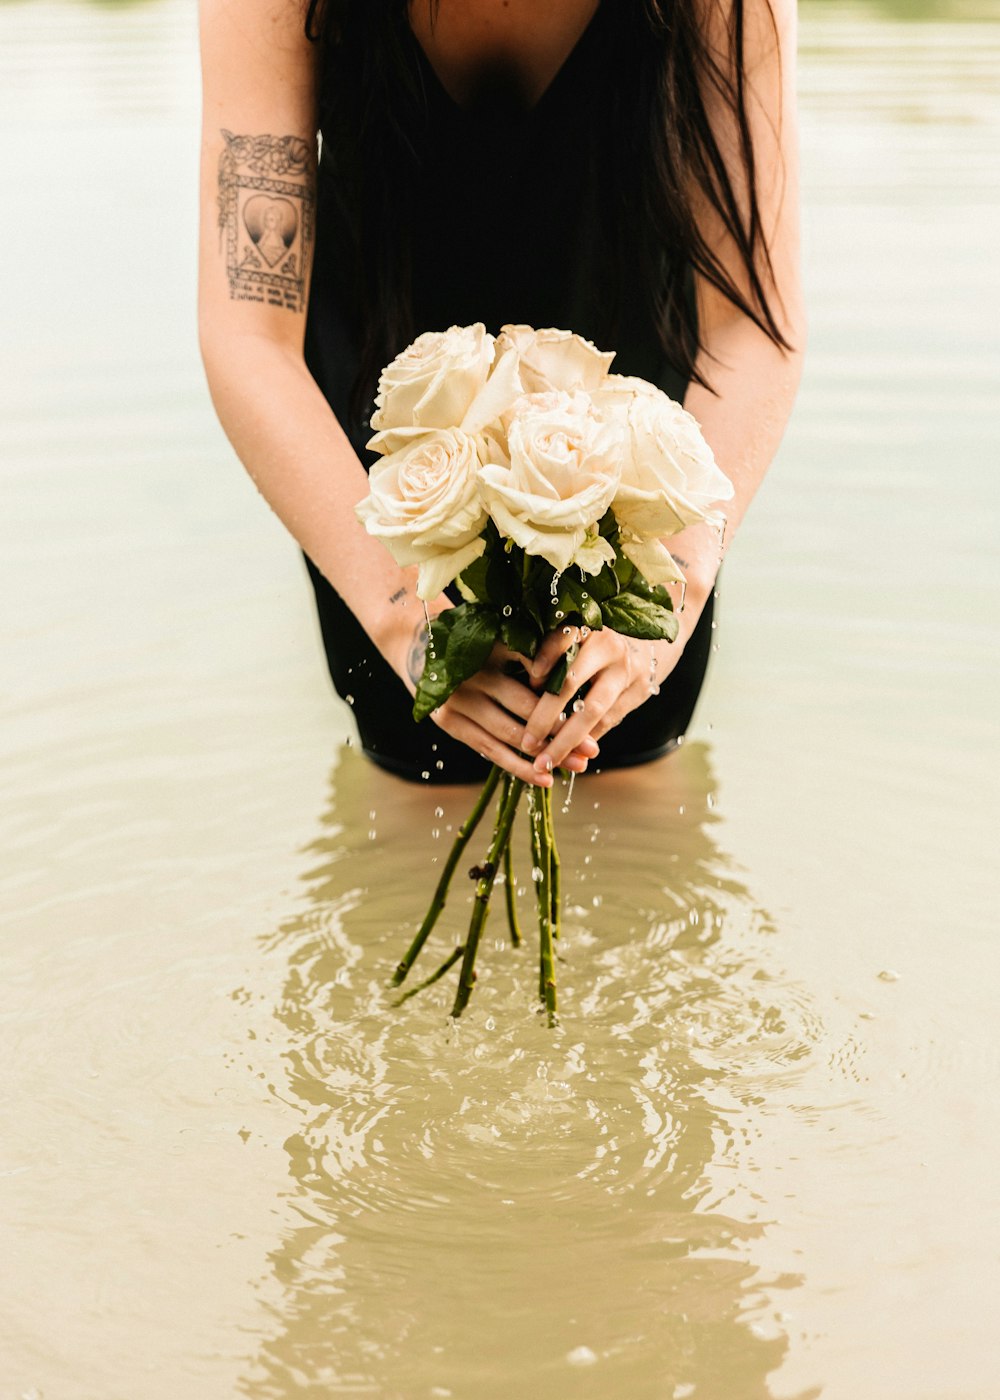 꽃다발을 들고 물속에 무릎을 꿇고 있는 여자